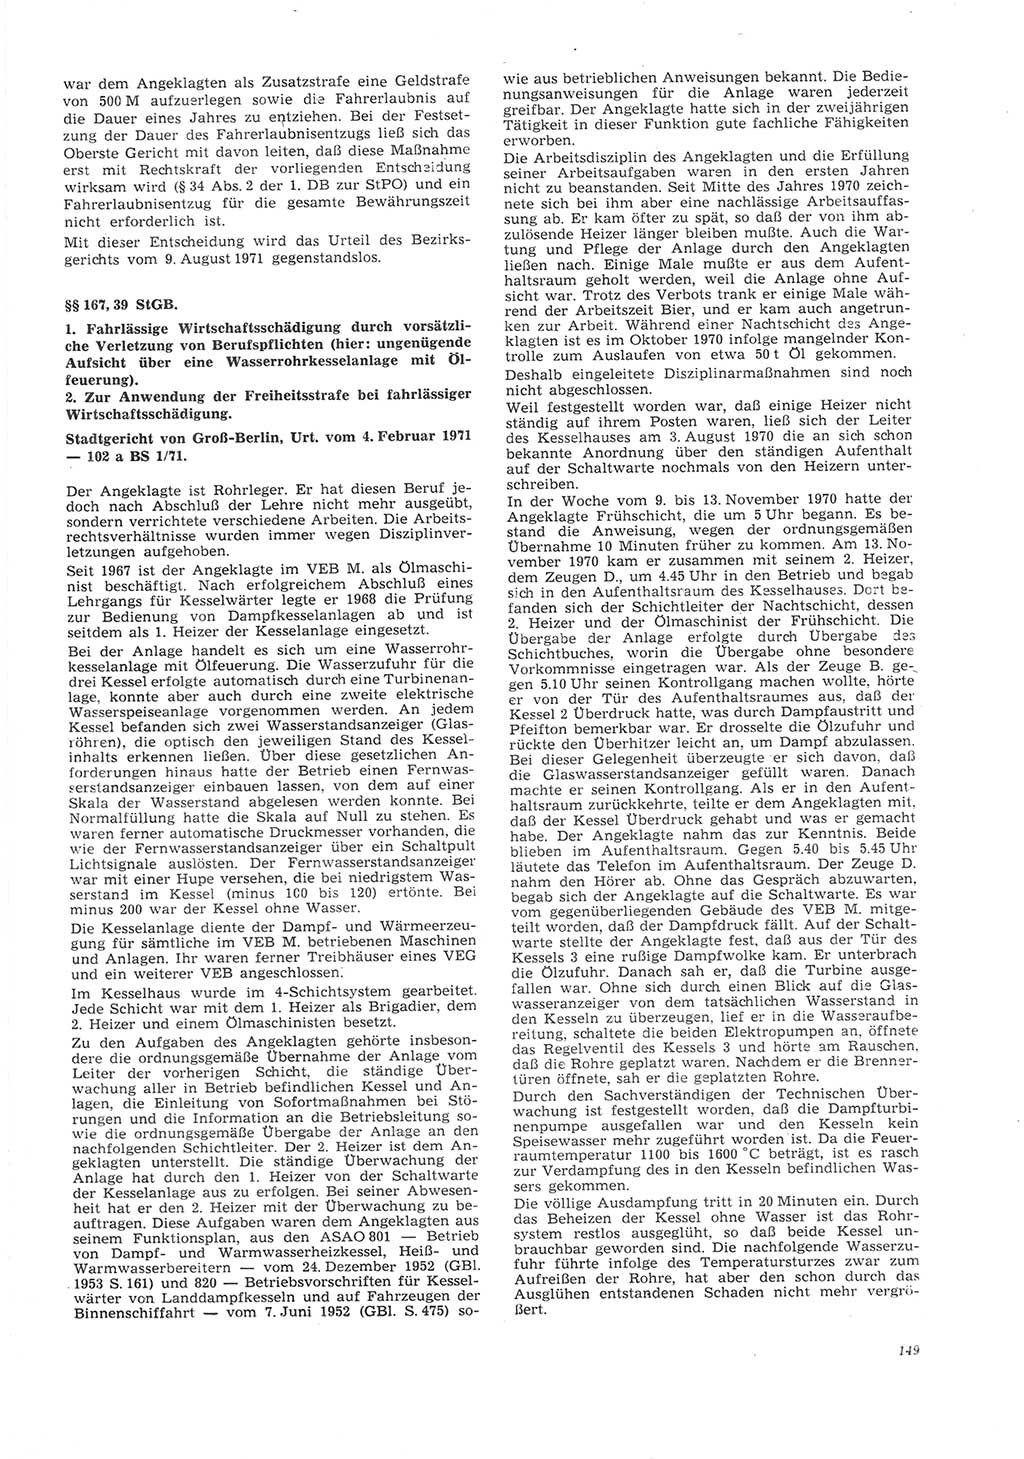 Neue Justiz (NJ), Zeitschrift für Recht und Rechtswissenschaft [Deutsche Demokratische Republik (DDR)], 26. Jahrgang 1972, Seite 149 (NJ DDR 1972, S. 149)